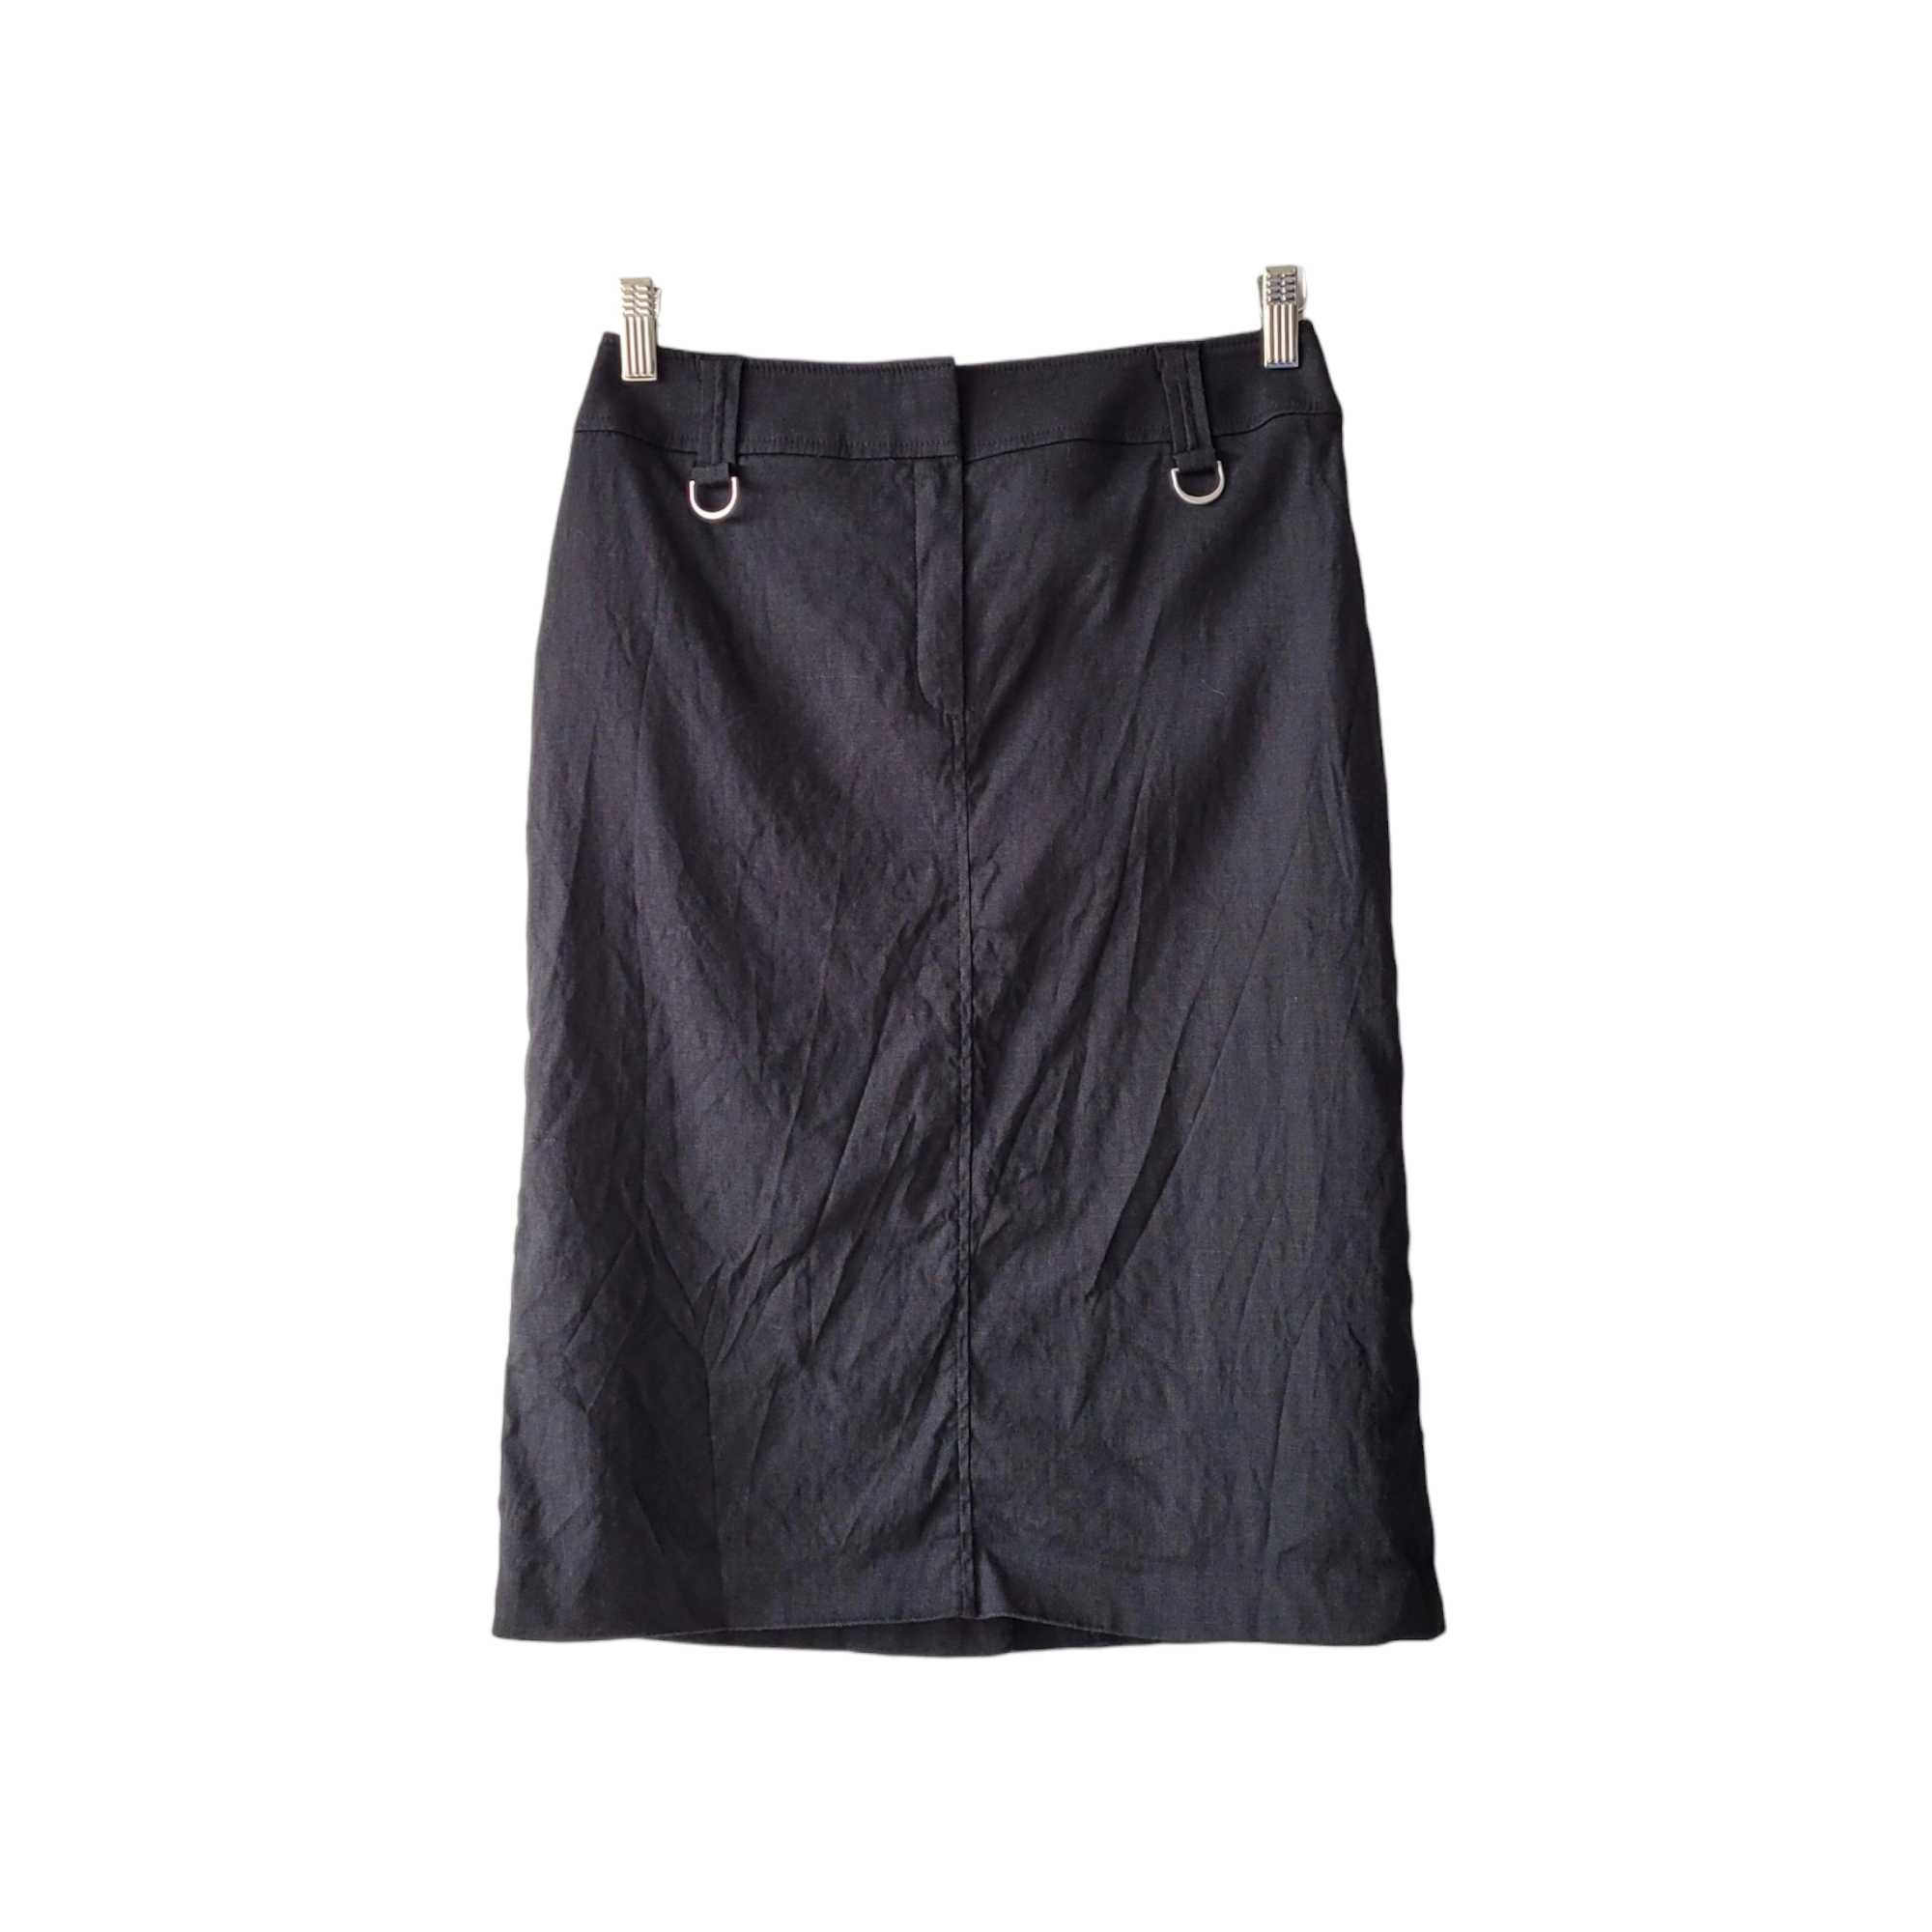 Czarna lniana spódnica ołówkowa S Marks & Spencer 70% len klasyczna